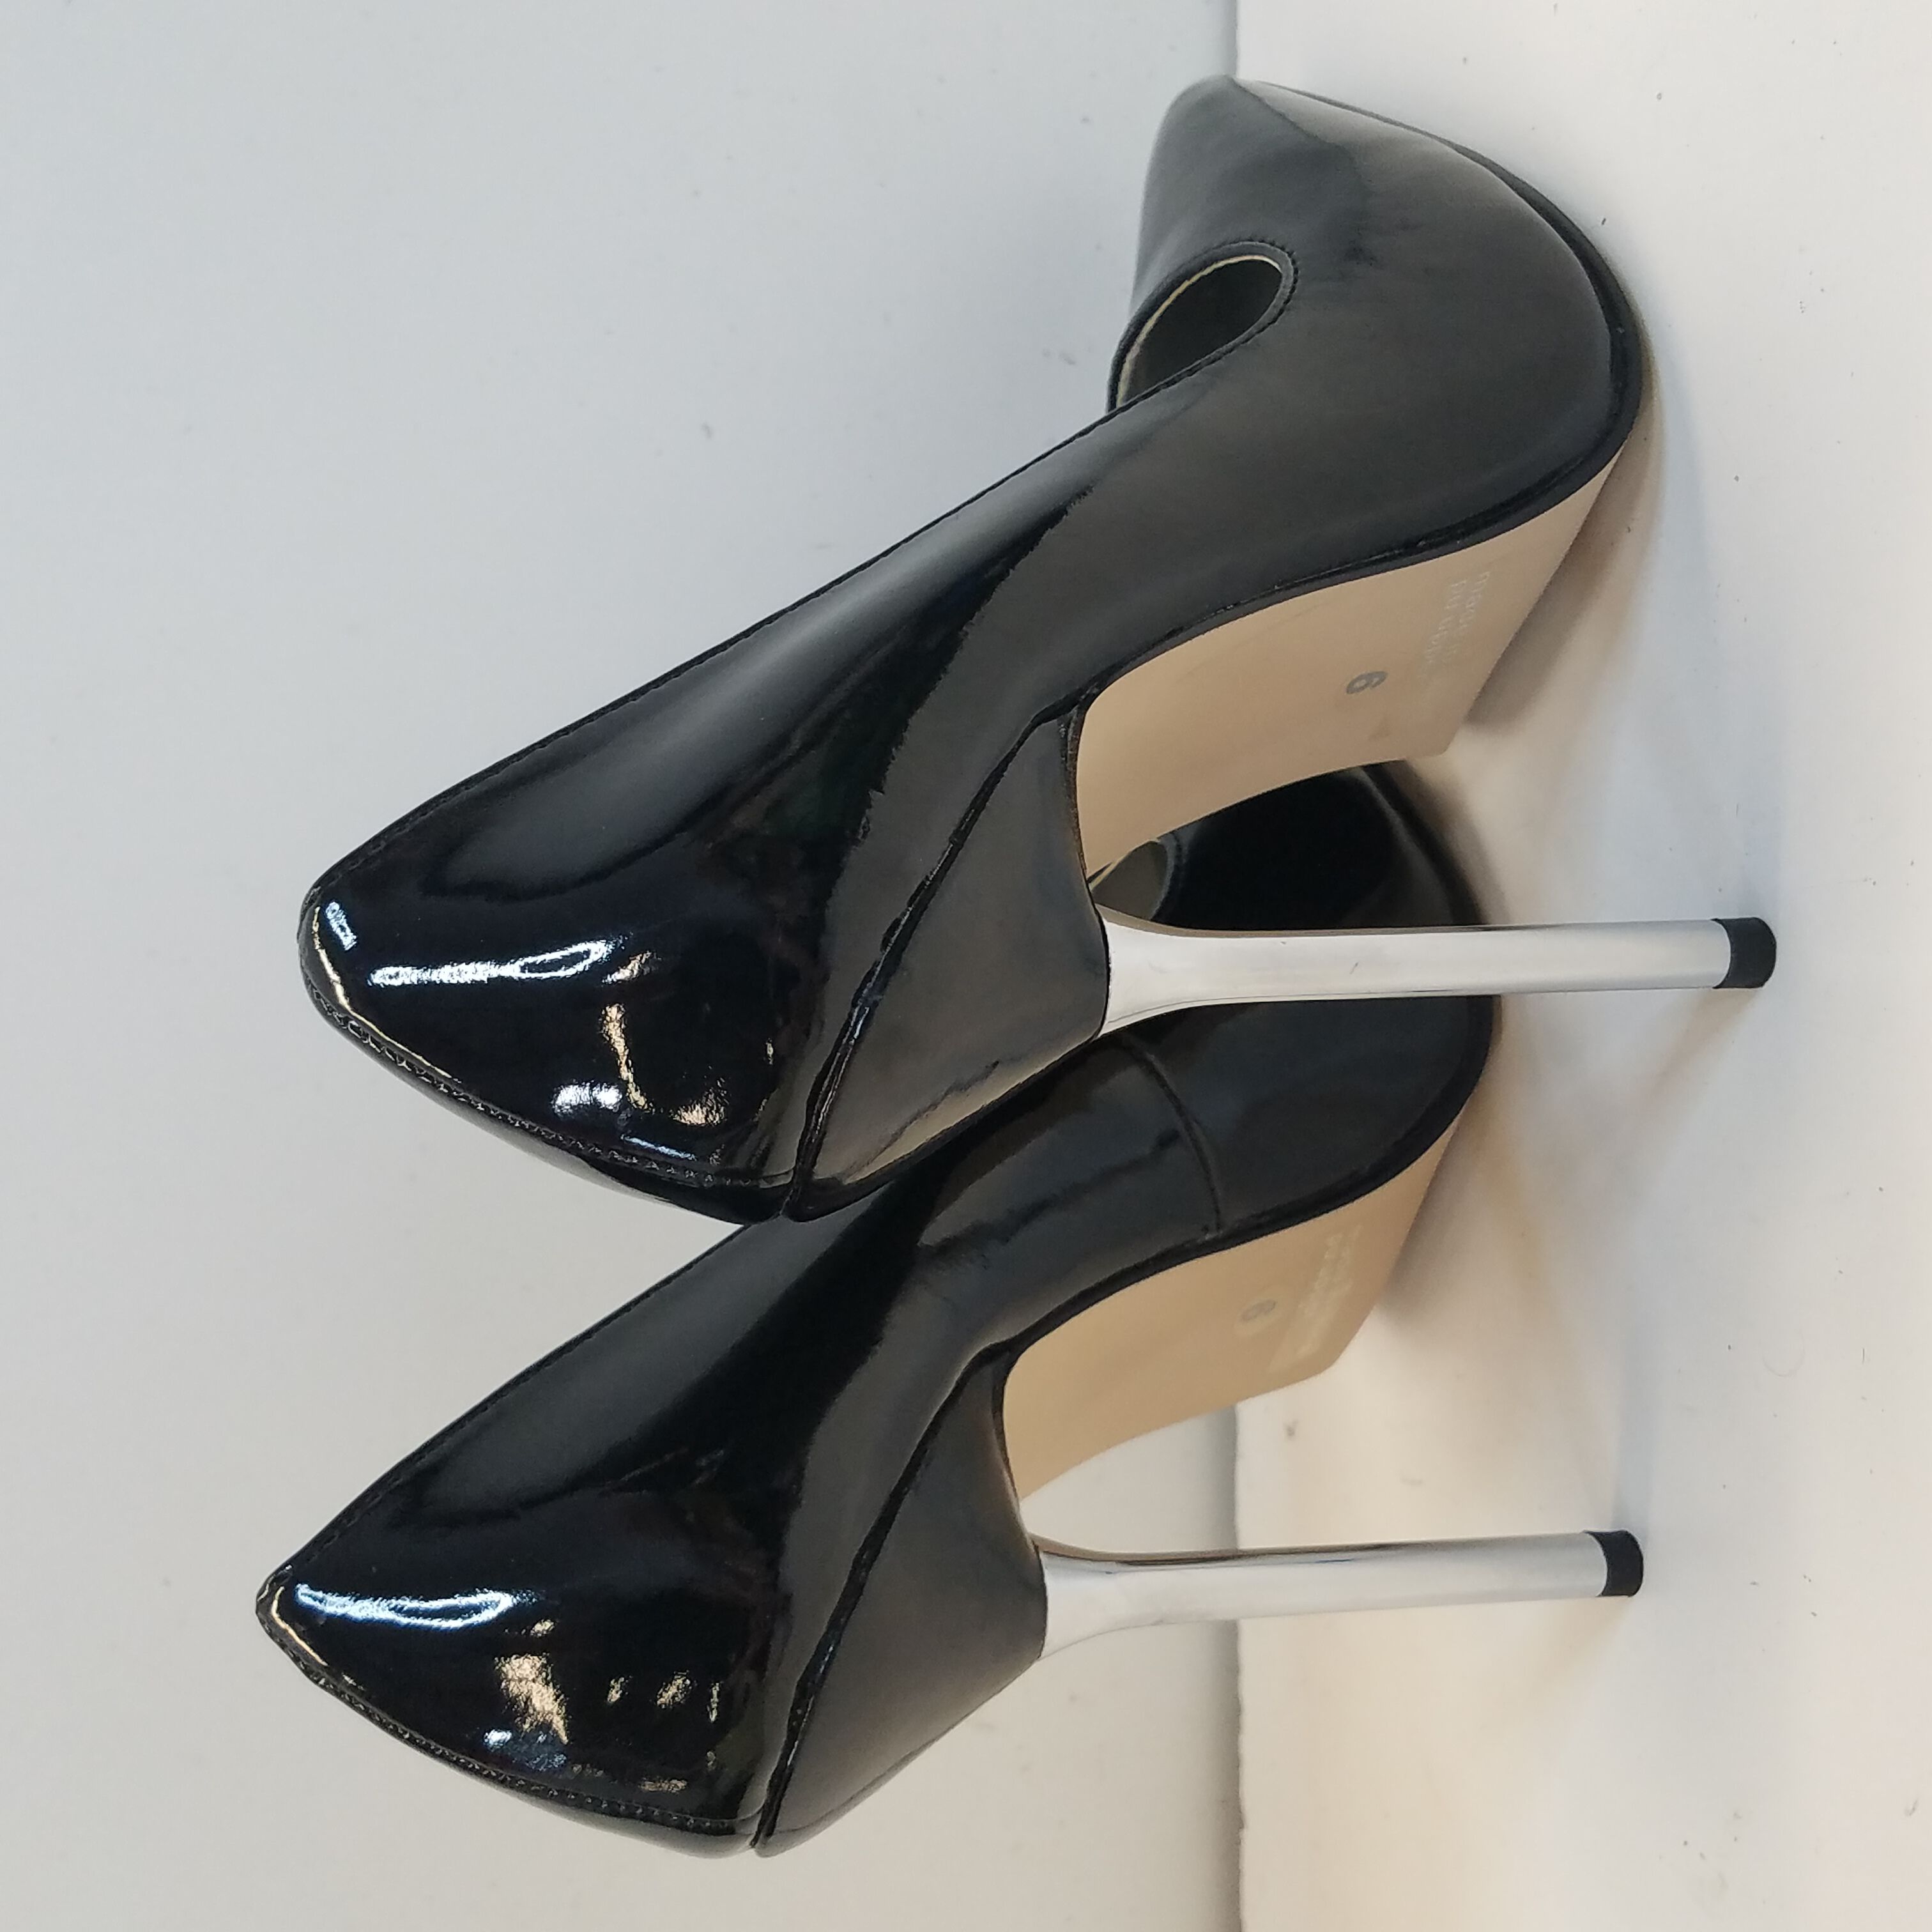 Pair of silver heels in original vintage box. Inscriptio… | Drouot.com